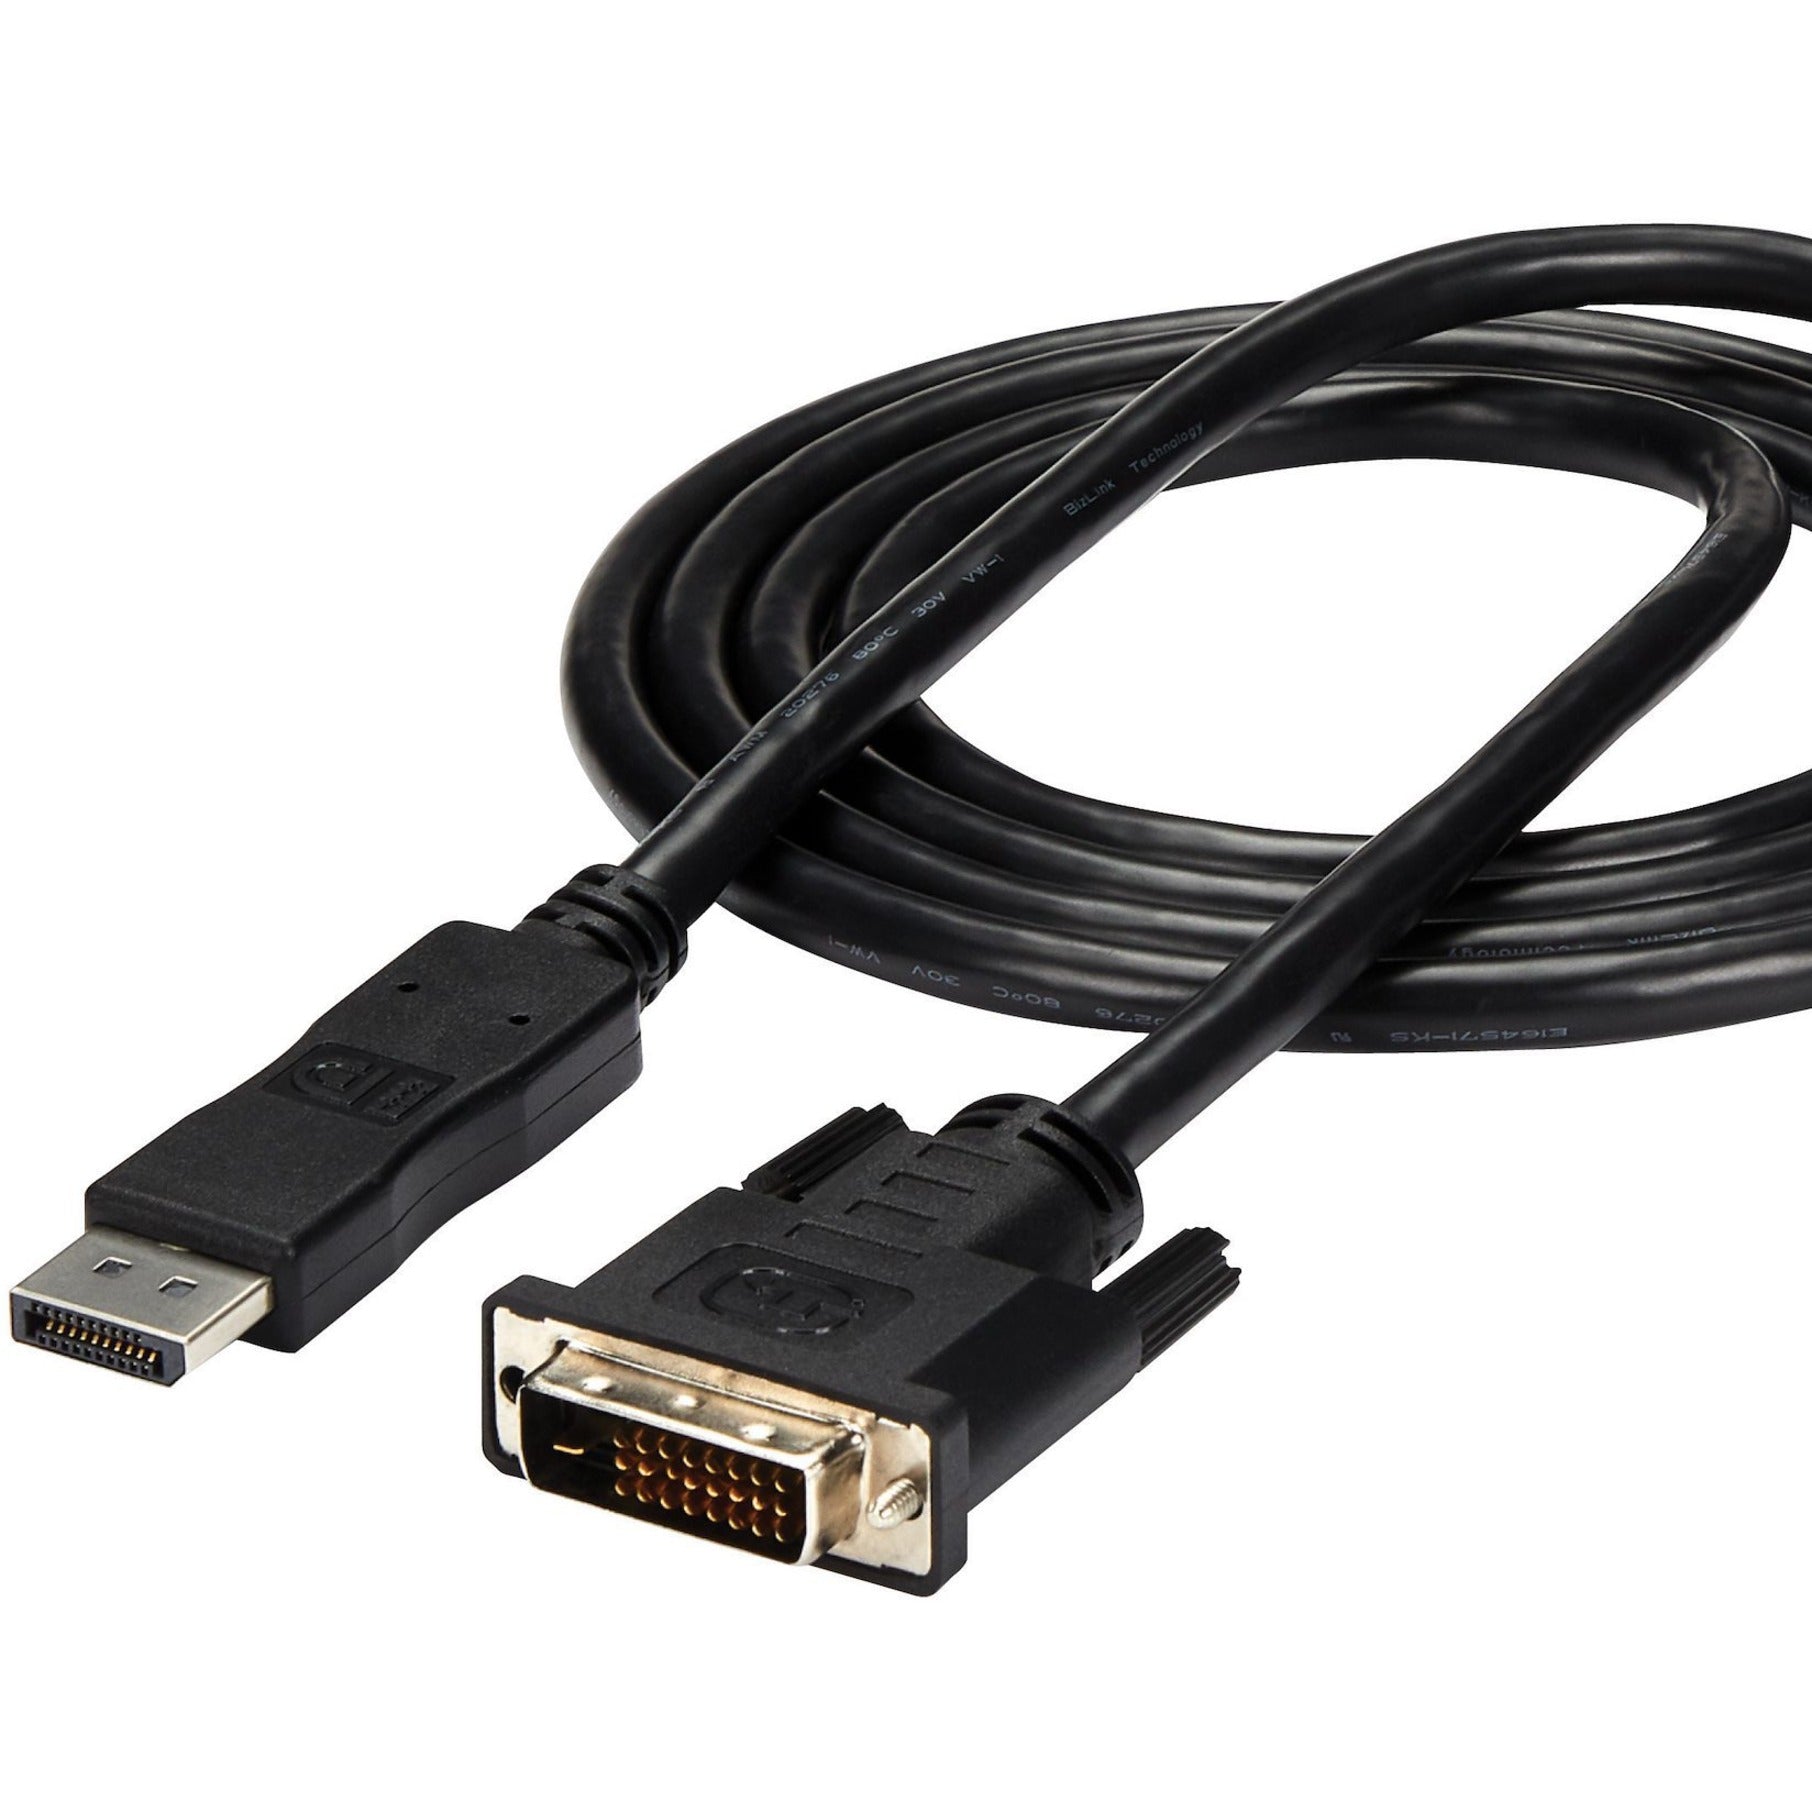 كبل عرض Startech.com DP2DVI-MM6 DisplayPort إلى DVI ، أسود ، 6 قدم ، توصيل وتشغيل ، دقة مدعومة 1920 × 1200 ستارتك.كوم - Startech